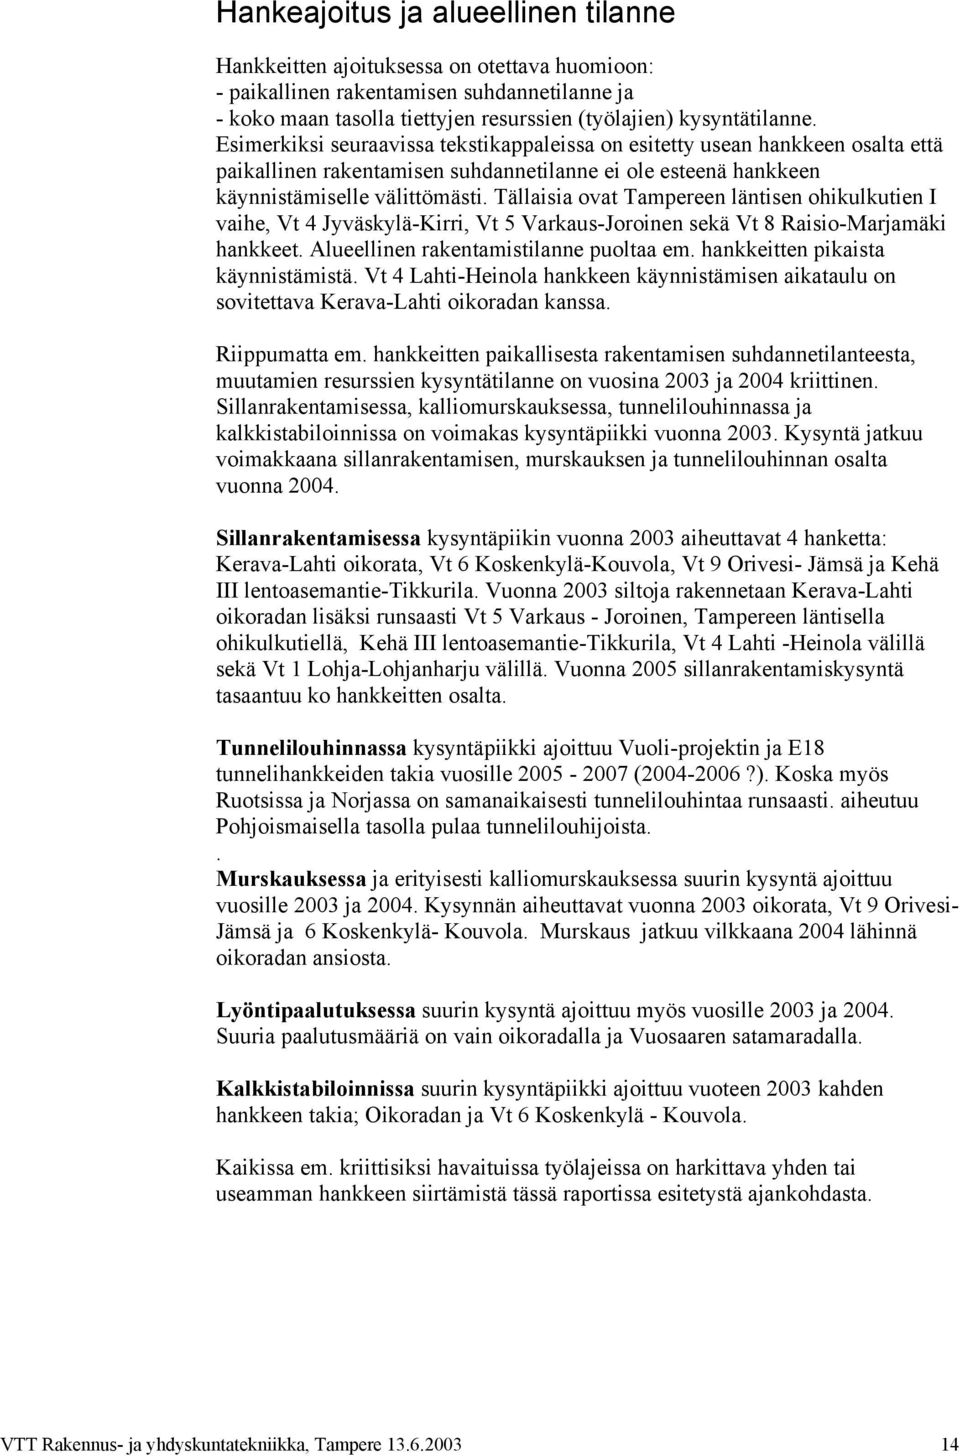 Tällaisia ovat Tampereen läntisen ohikulkutien I vaihe, Vt 4 Jyväskylä-Kirri, Vt 5 Varkaus-Joroinen sekä Vt 8 Raisio-Marjamäki hankkeet. Alueellinen rakentamistilanne puoltaa em.